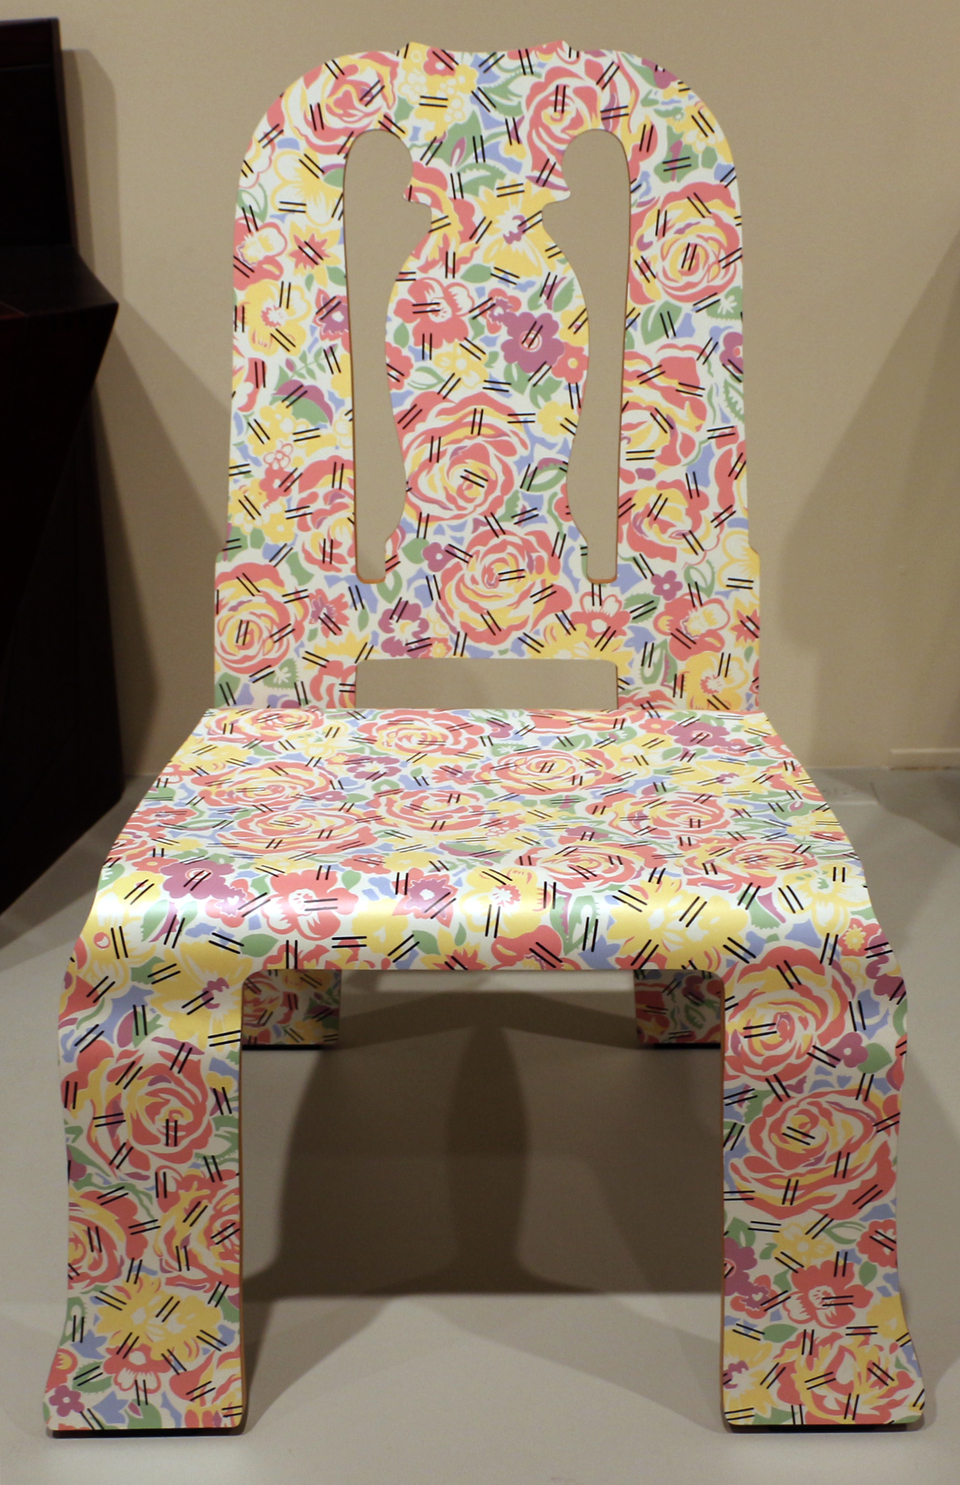 A Knoll számára Robert Venturival közösen tervezett szék egy Queen Anne stílusú szék sziluettjét ötvözi a hajlított lemezzel és egy giccses mintával. Forrás: Wikipedia